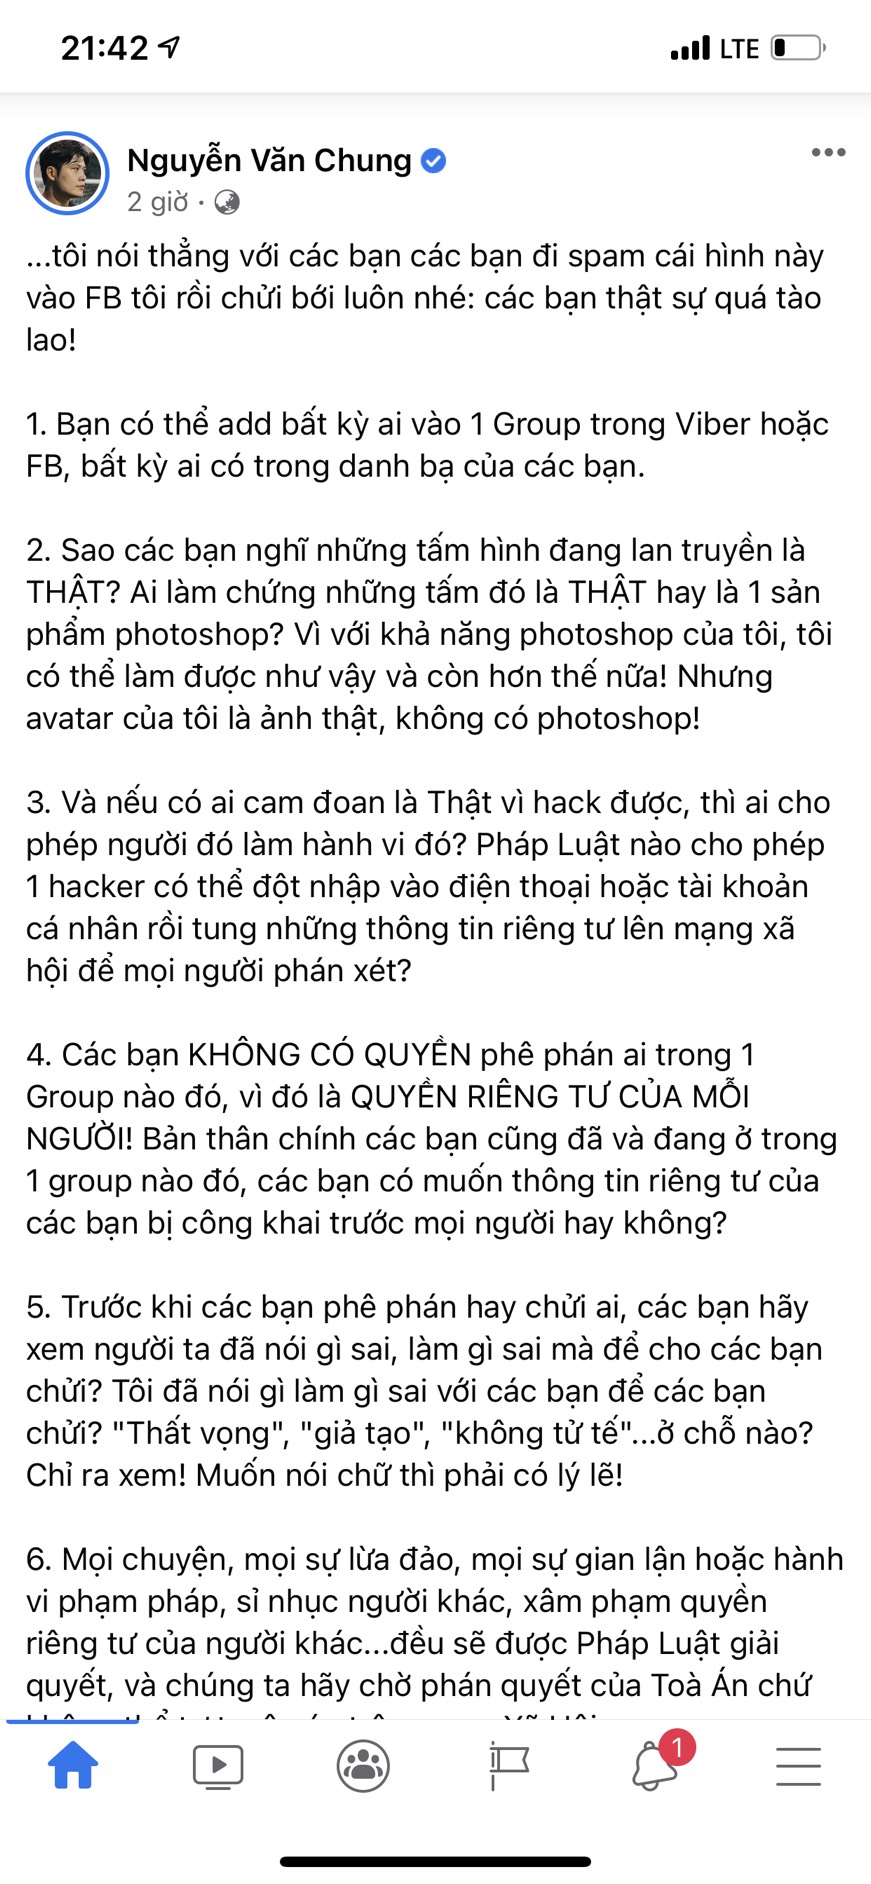 Bài đăng dài của nhạc sĩ Nguyễn Văn Chung trên trang cá nhân